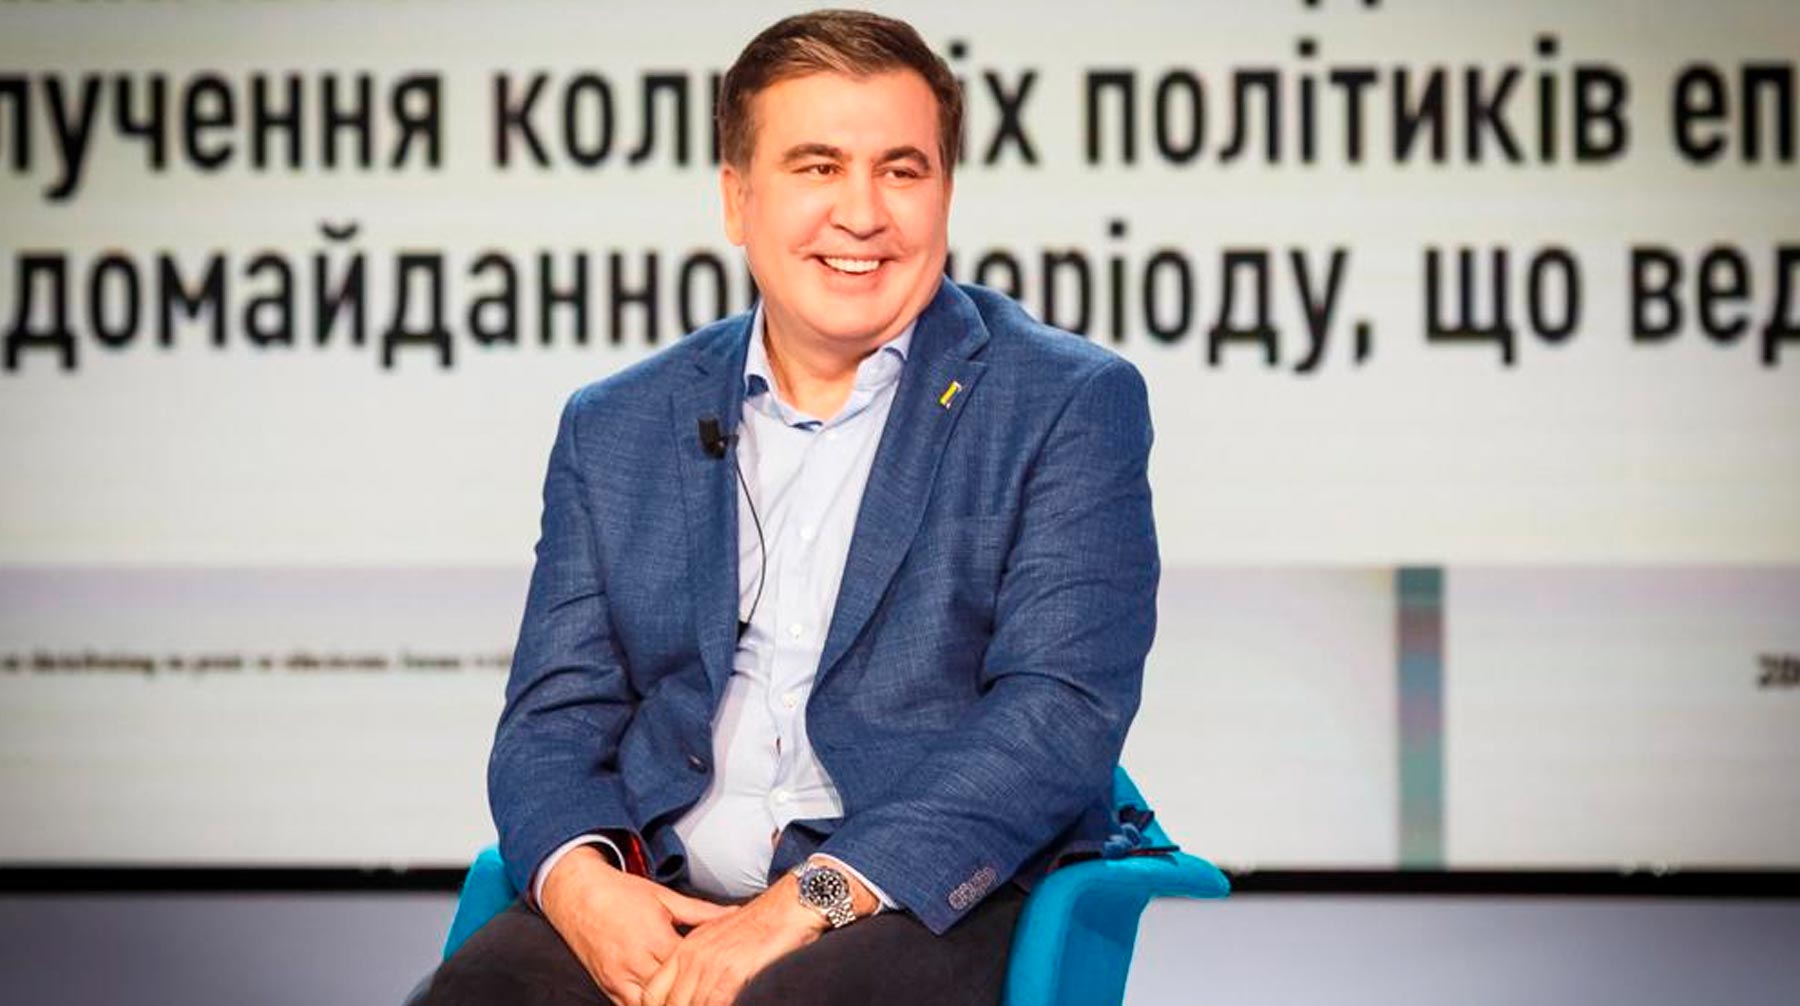 Экс-президент Грузии считает российские реформы более эффективными Михаил Саакашвили